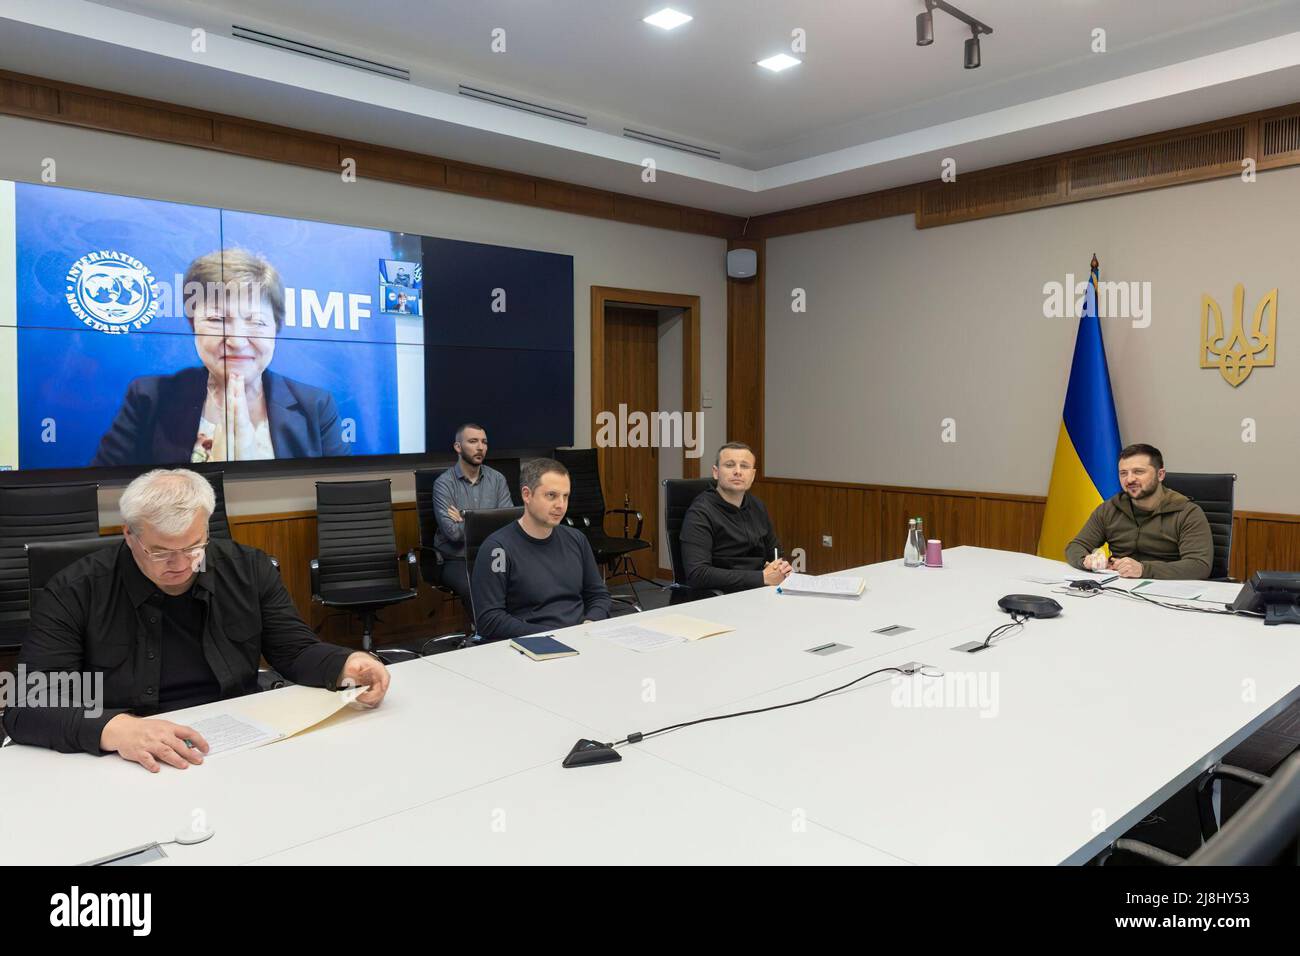 La Presidenta de Ucrania, Volodymyr Zelensky, celebró una videoconferencia con la Directora Gerente del Fondo Monetario Internacional, Kristalina Georgieva, en vísperas de su participación en la reunión de los G7 ministros de Hacienda. El Presidente agradeció al FMI por apoyar la economía de Ucrania durante los tiempos difíciles de la guerra. 'Gracias por ser líder en temas de ayuda y superar esta situación', dijo Volodymyr Zelenskyy. Según el Presidente, el déficit mensual del presupuesto estatal de Ucrania es de unos 5 millones de dólares estadounidenses. Así que pidió al FMI que acelerara el apoyo. Foto de stock